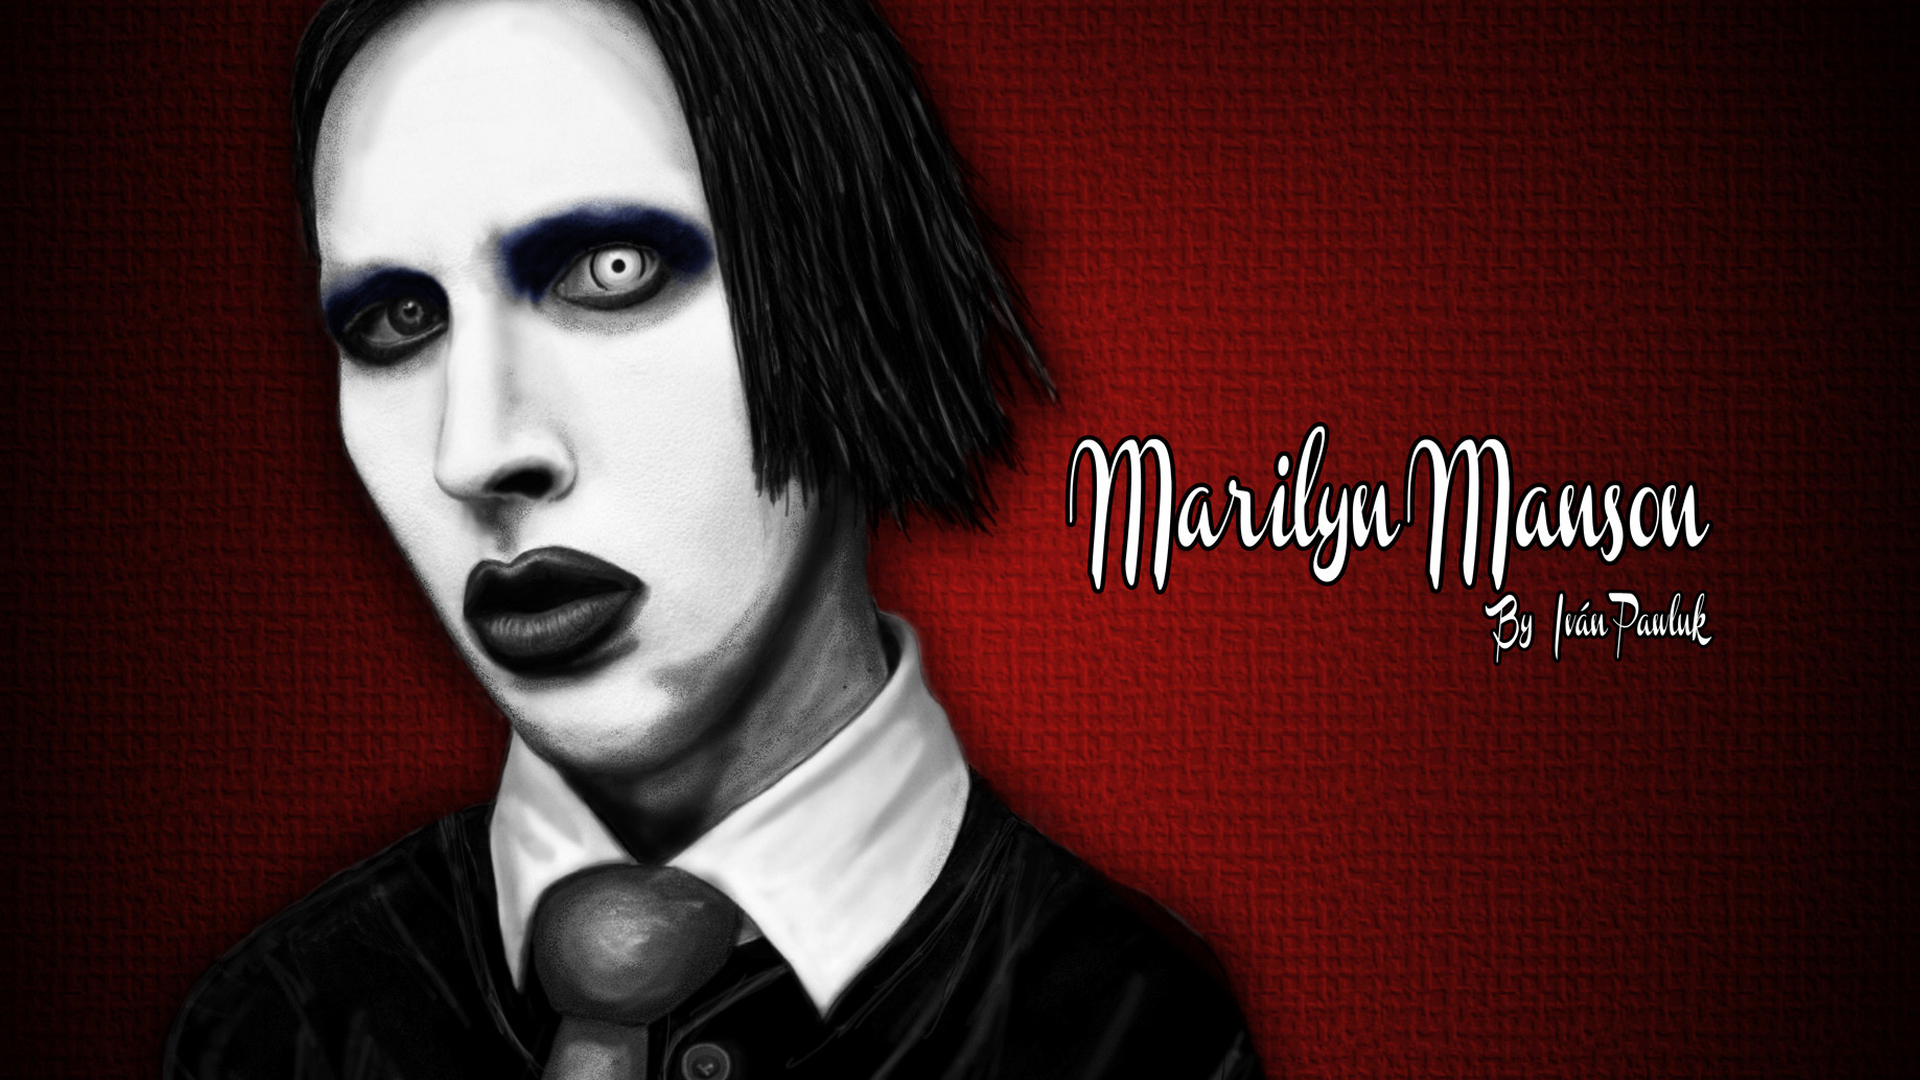 Marilyn Manson Industrial Metal Rock Heavy Shock Gothic - Marilyn Manson Wallpaper Hd , HD Wallpaper & Backgrounds